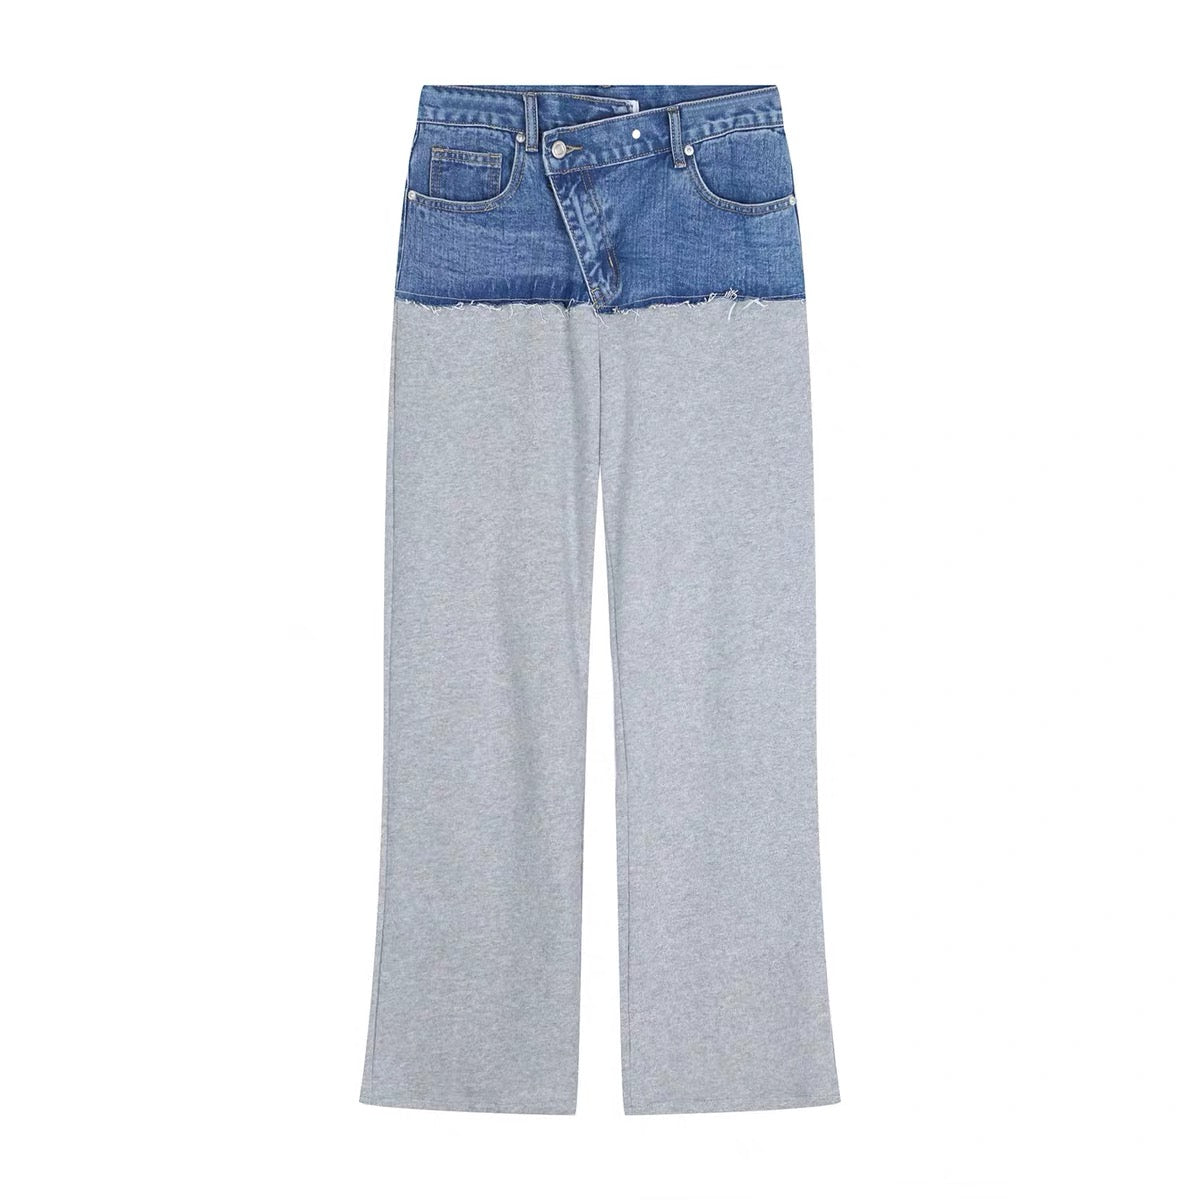 Дамски панталон с дънков мотив-Clothing-Thedresscode